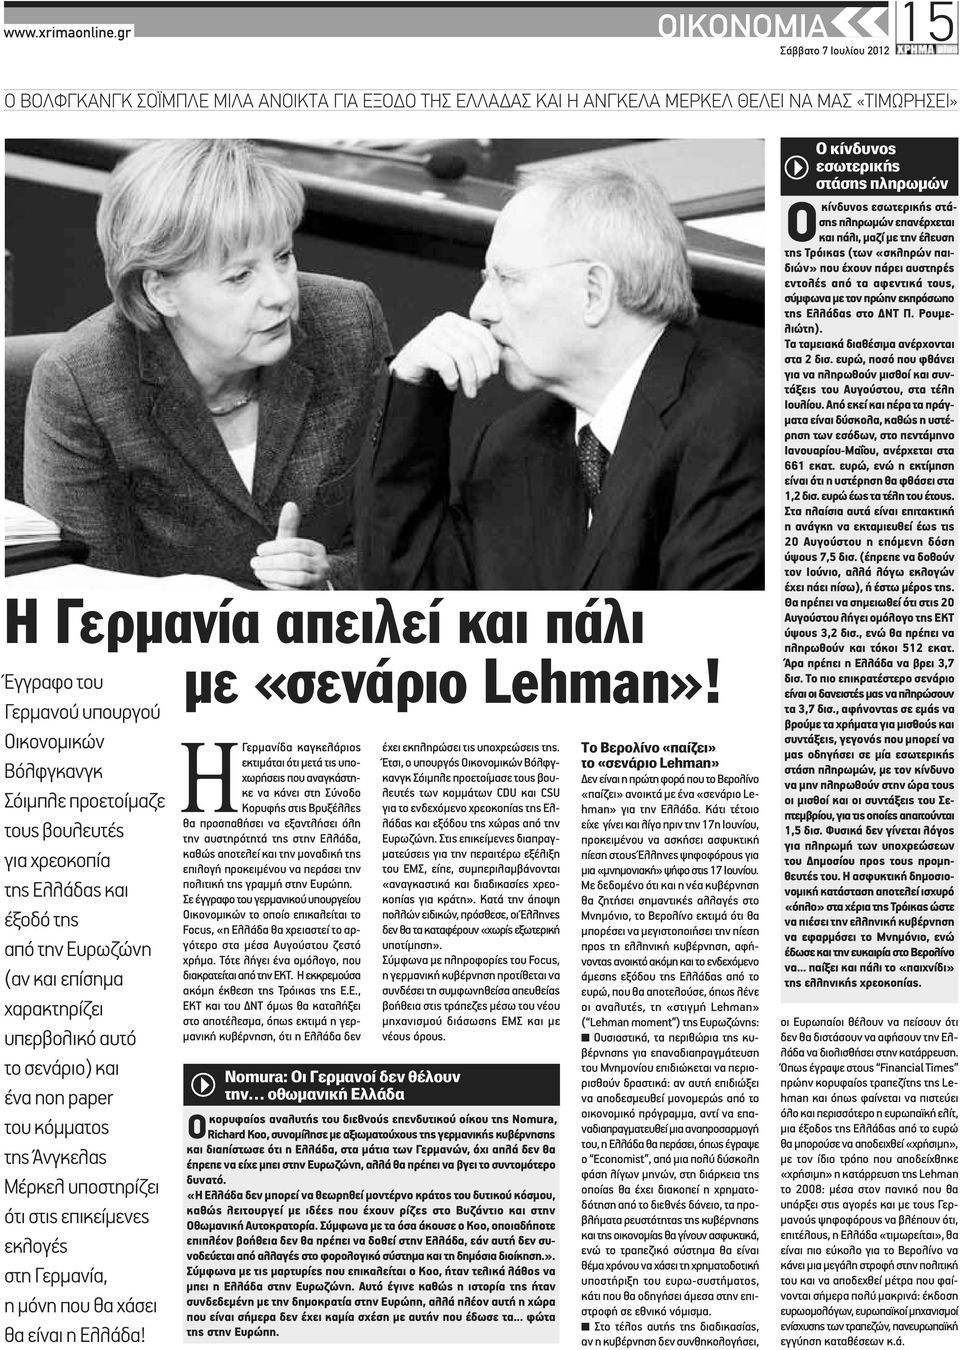 σενάριο) και ένα non paper του κόμματος της Άνγκελας Μέρκελ υποστηρίζει ότι στις επικείμενες εκλογές στη Γερμανία, η μόνη που θα χάσει θα είναι η Ελλάδα!